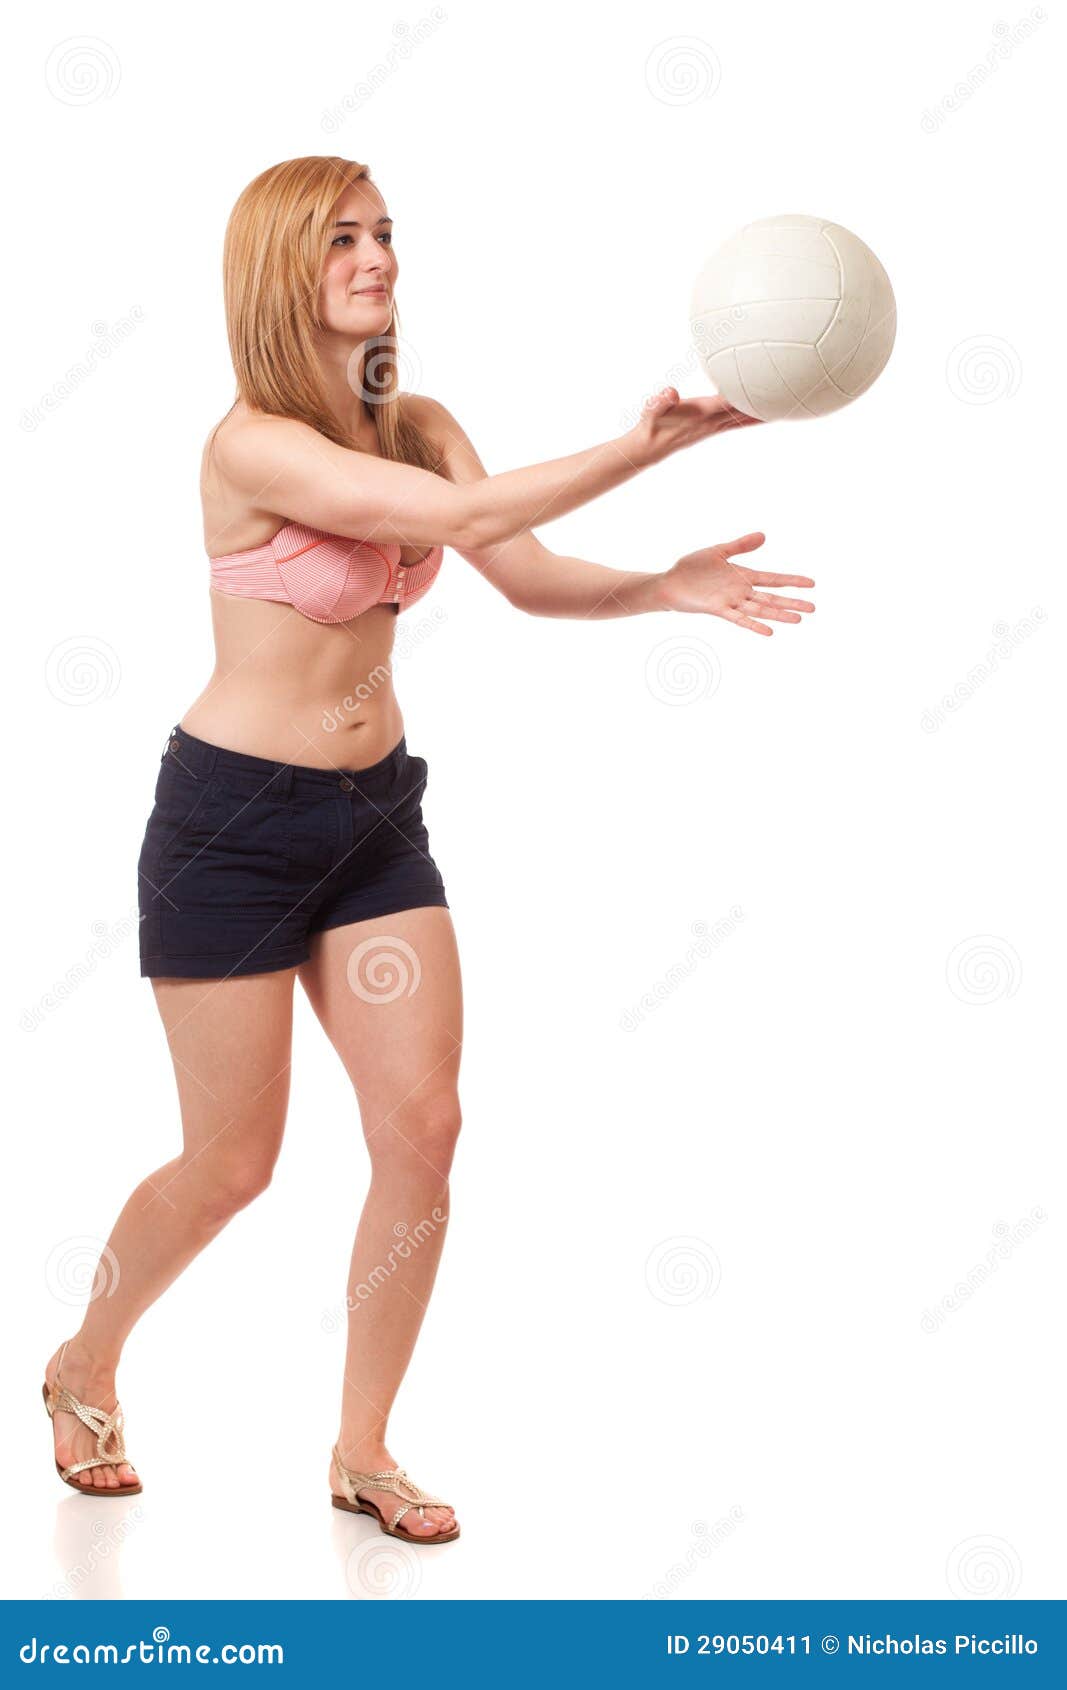 Junge Frau, die Volleyball spielt. Studio geschossen über Weiß.